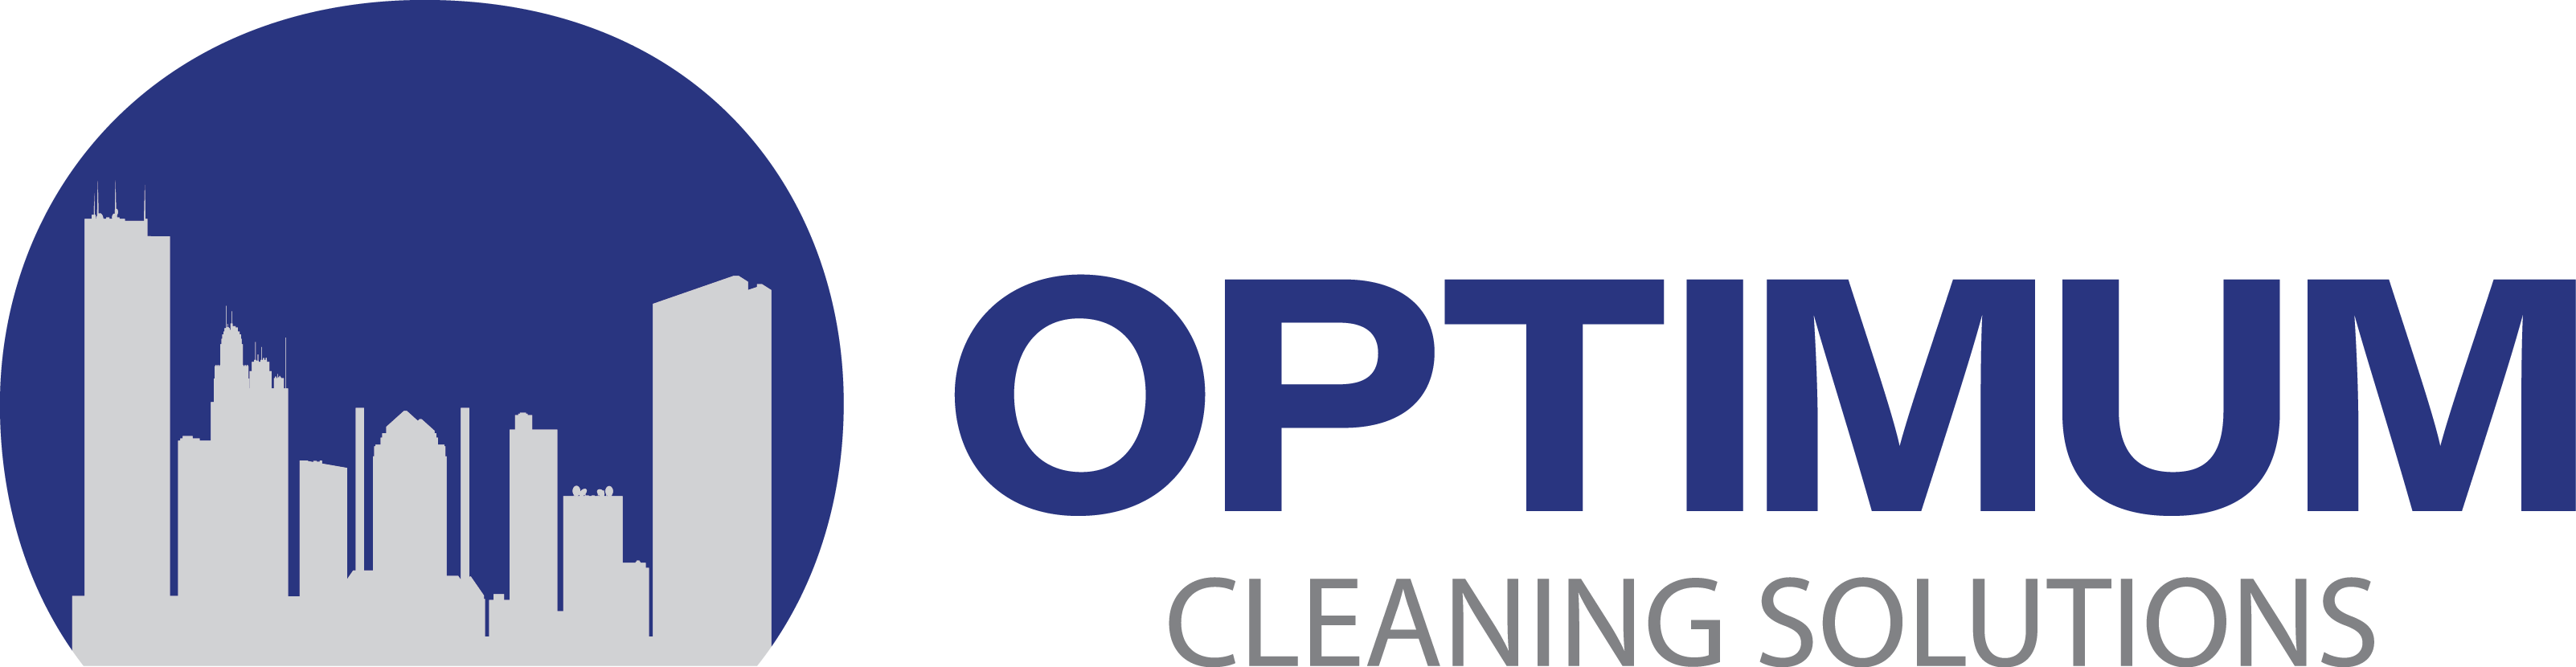 Logo - Optimum Cleaning Solutions (3205x830)